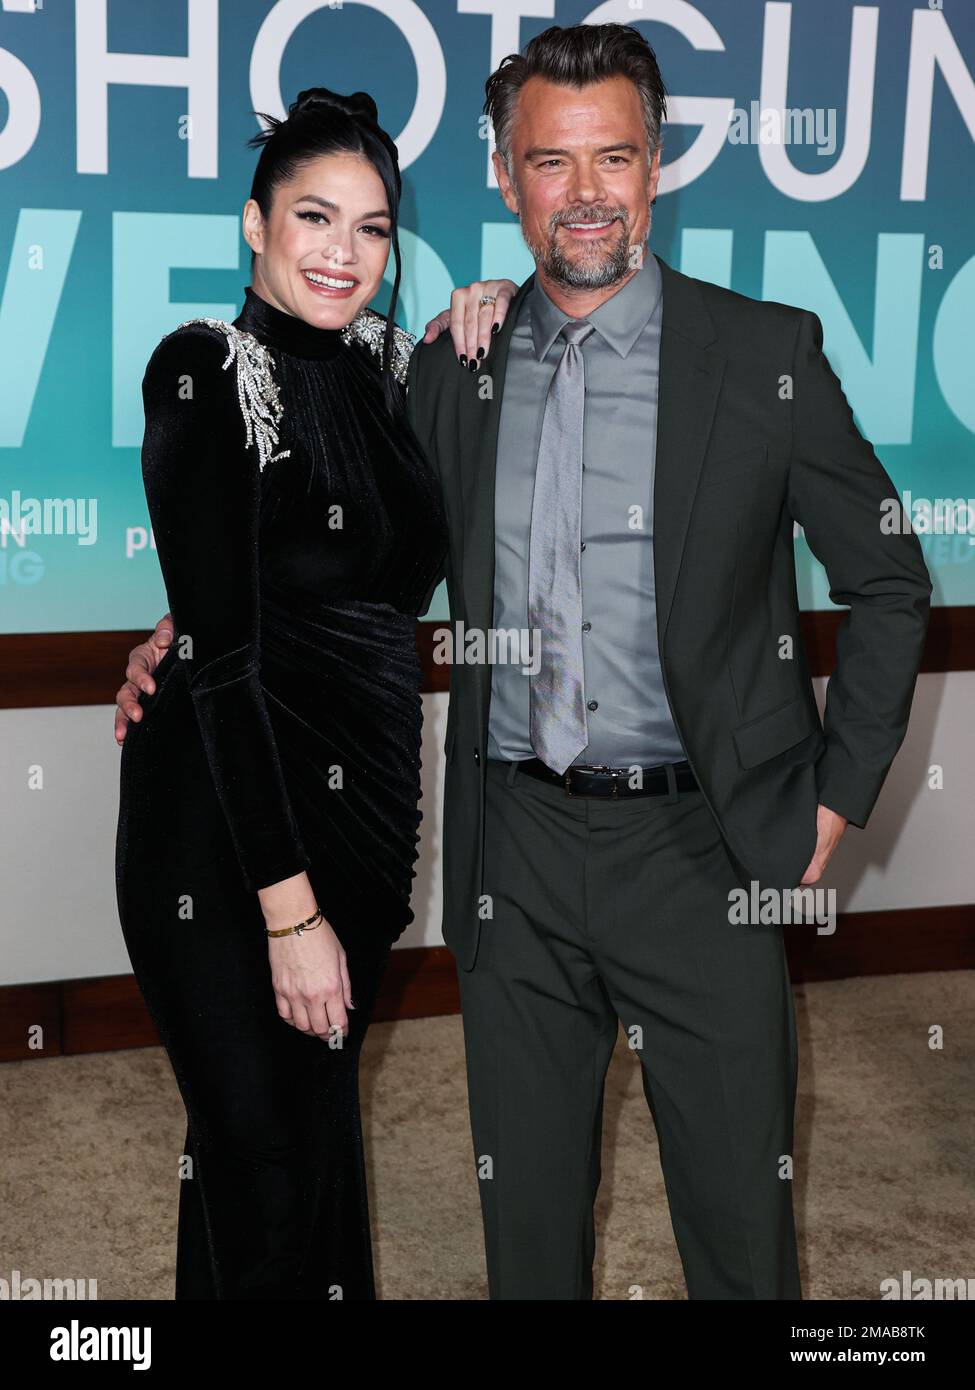 HOLLYWOOD, LOS ANGELES, CALIFORNIA, USA - GENNAIO 18: Audra Mari e l'attore  americano Josh Duhamel arrivano alla Los Angeles Premiere del "Shotgun  Wedding" di Amazon prime Video, che si tiene al TCL